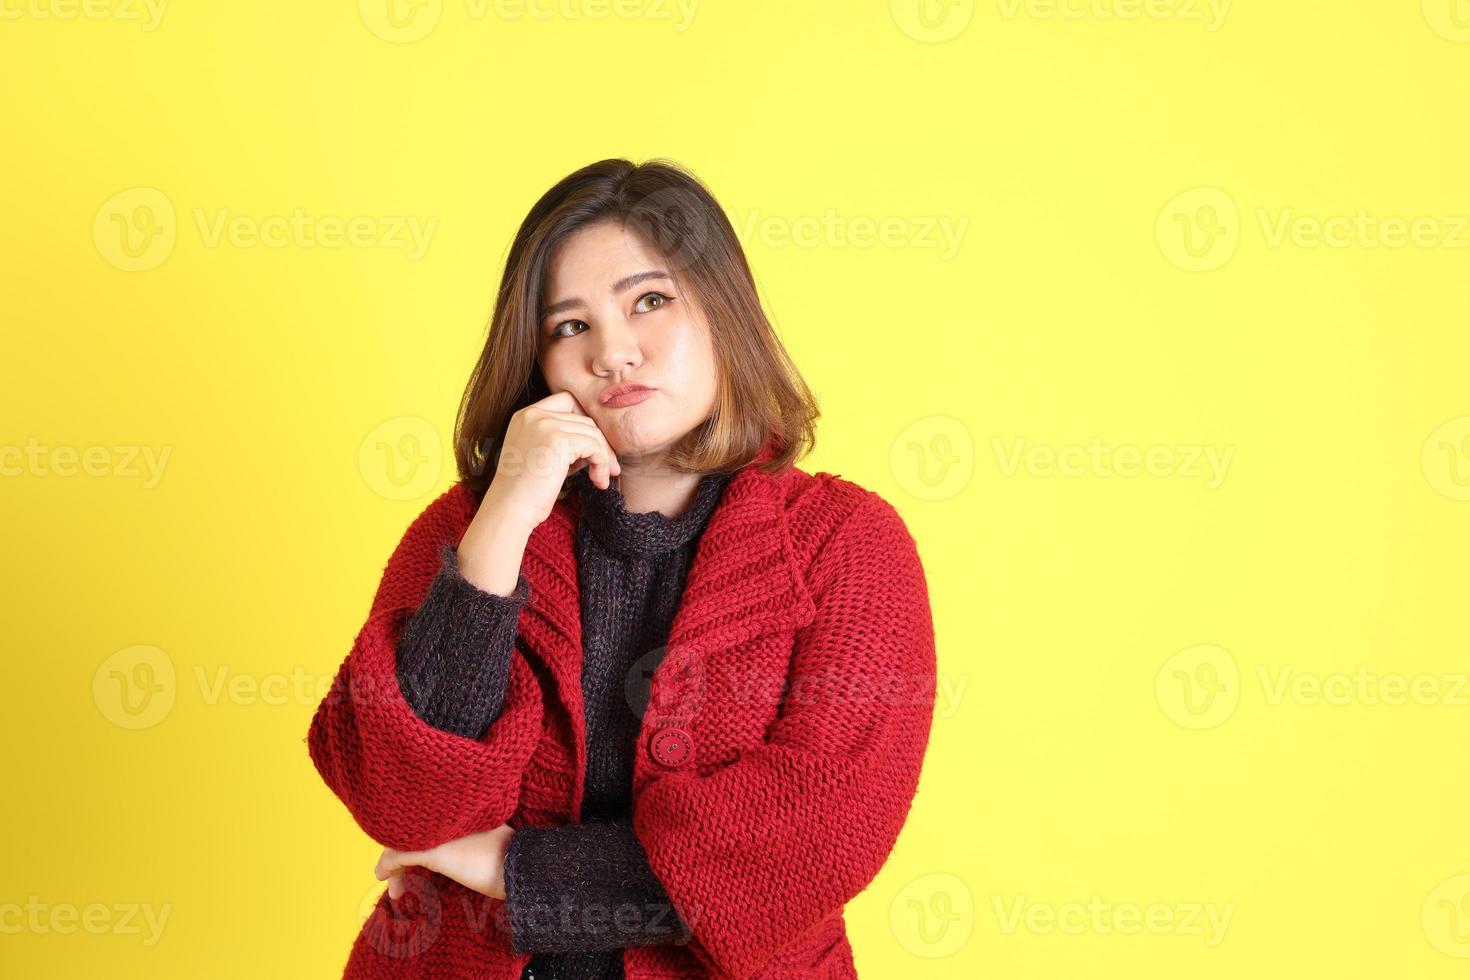 donna asiatica paffuta foto